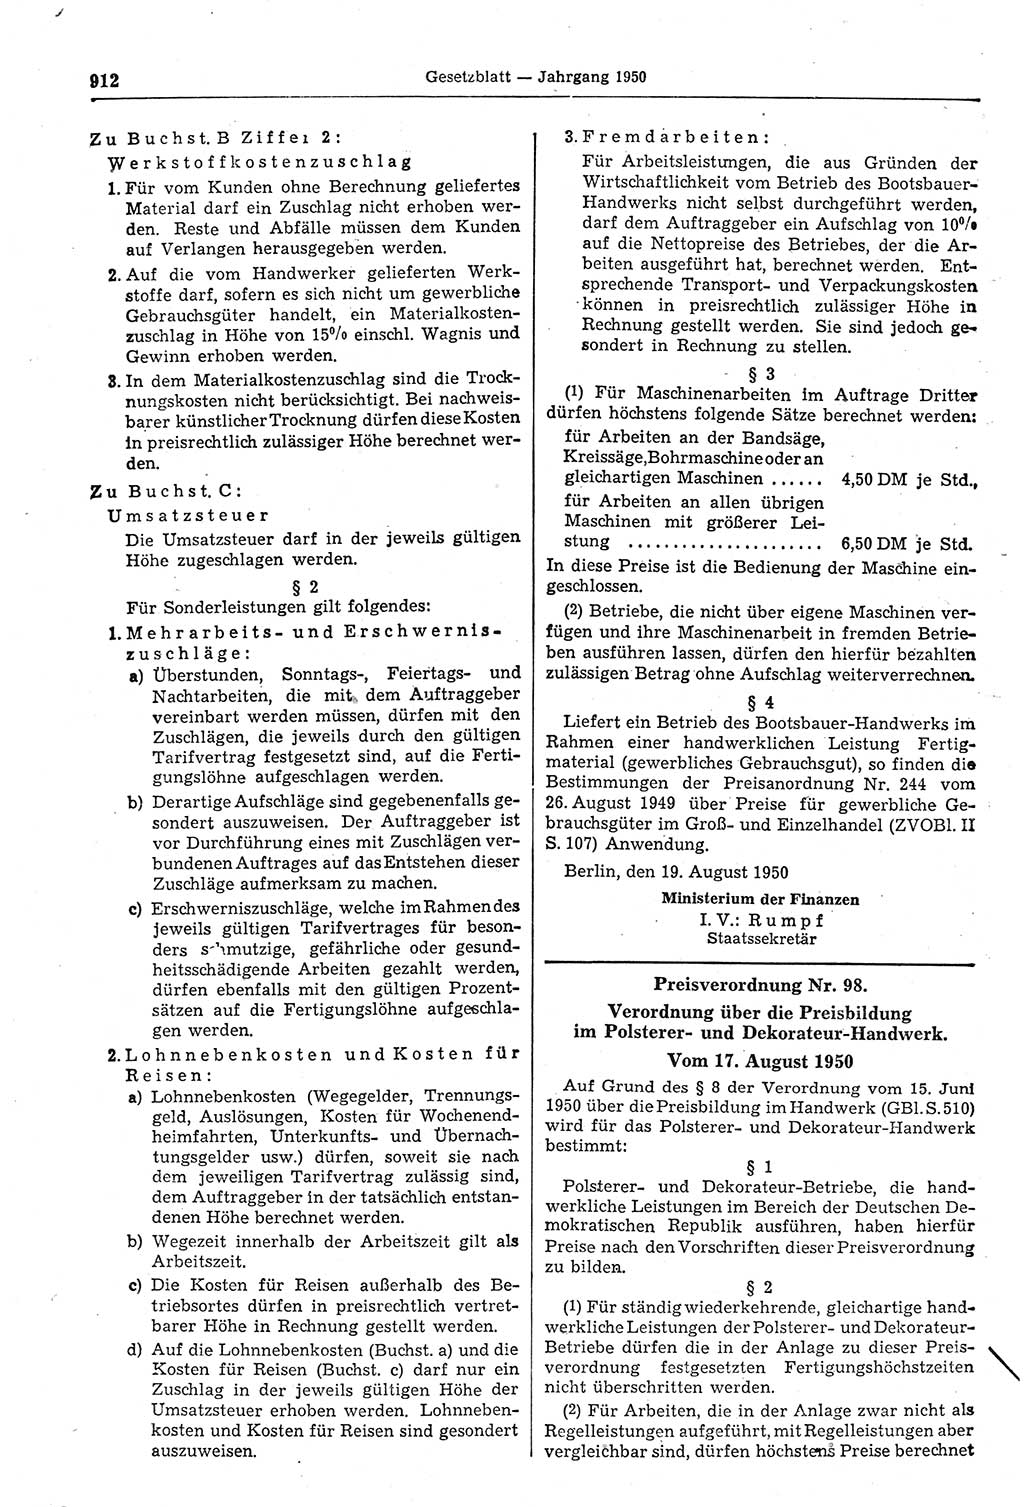 Gesetzblatt (GBl.) der Deutschen Demokratischen Republik (DDR) 1950, Seite 912 (GBl. DDR 1950, S. 912)